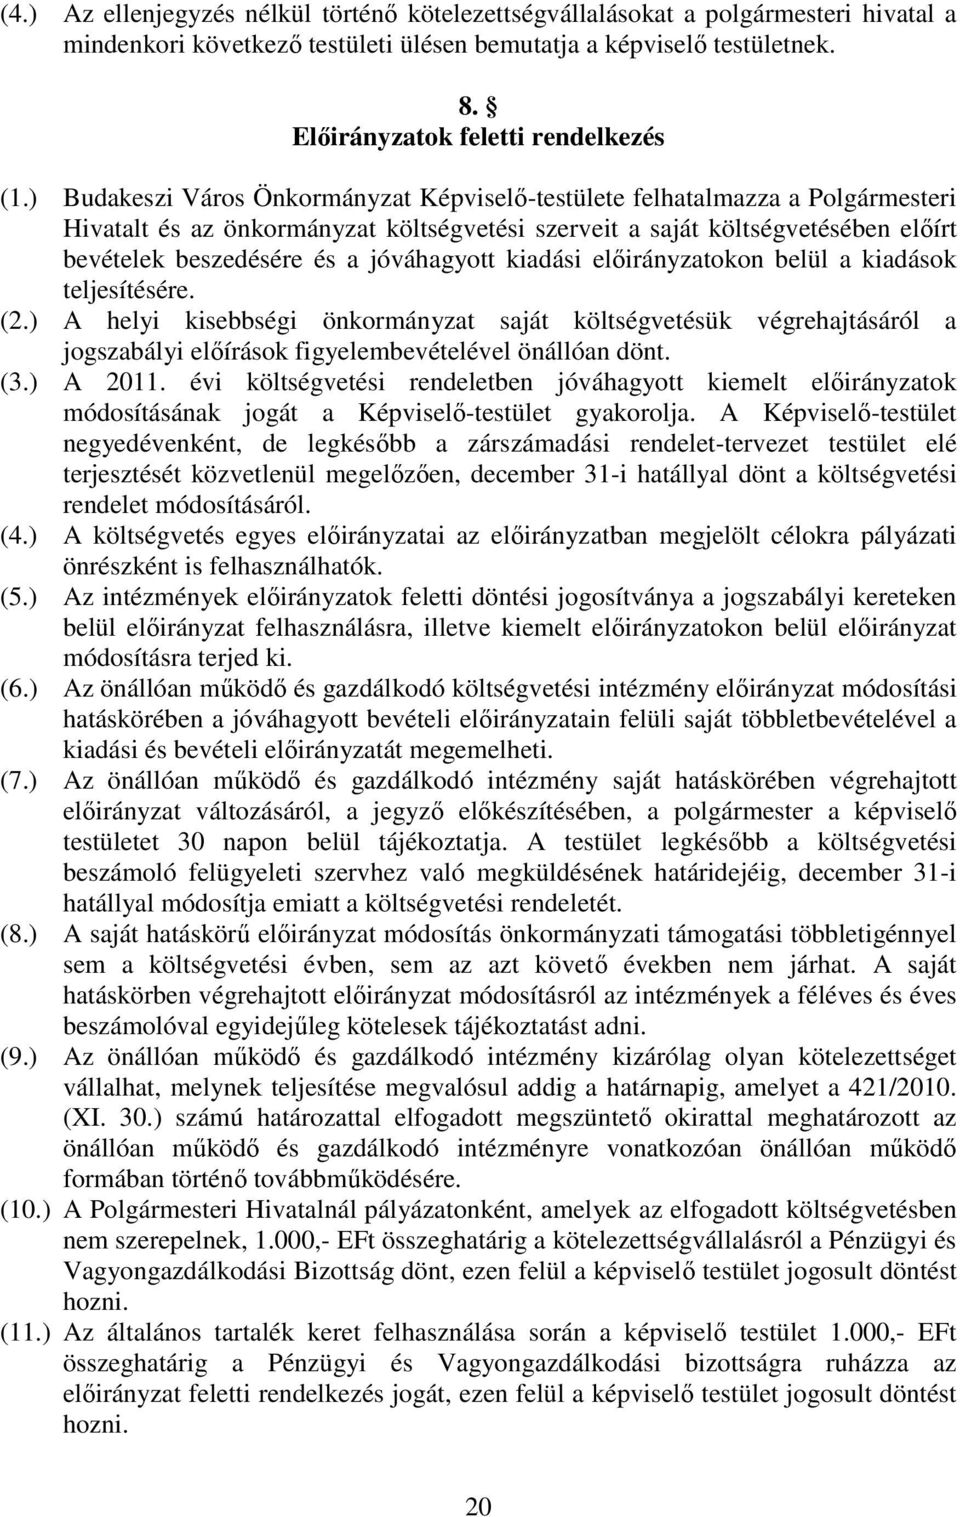 ) Budakeszi Város Önkormányzat Képviselı-testülete felhatalmazza a Polgármesteri Hivatalt és az önkormányzat költségvetési szerveit a saját költségvetésében elıírt bevételek beszedésére és a